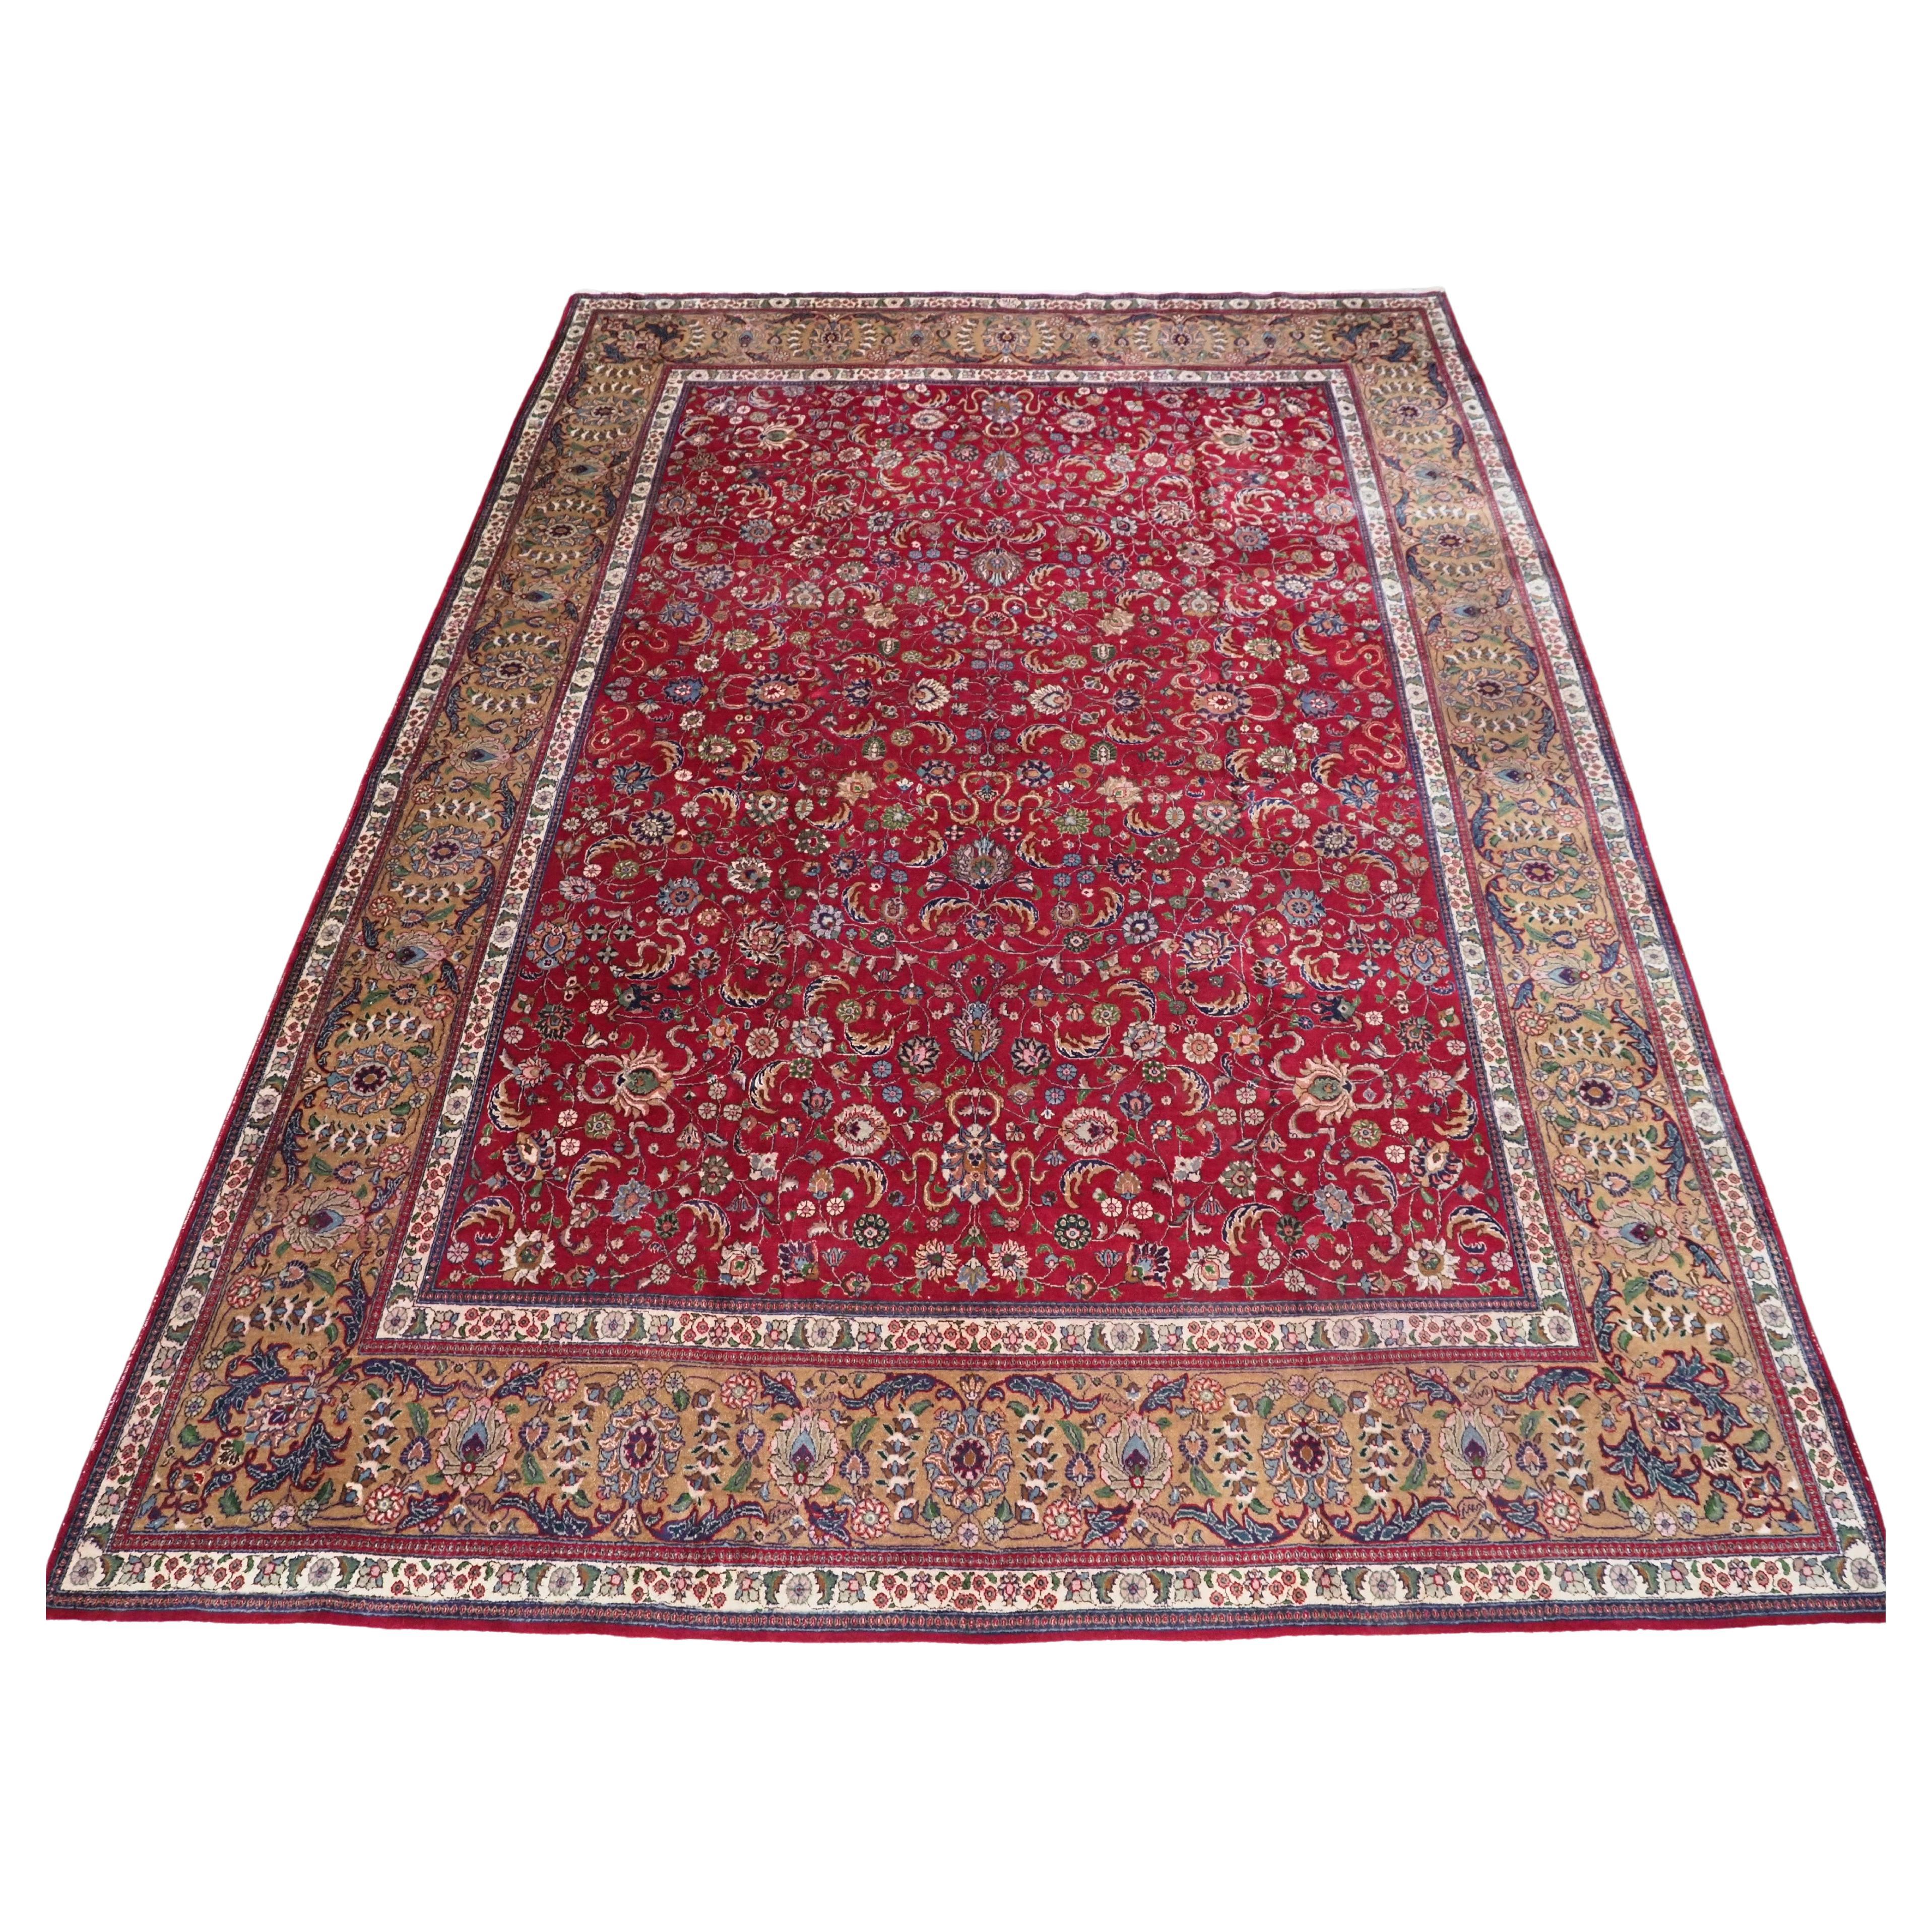 Tabriz-Teppich im Vintage-Stil mit traditionellem All-Over-Design in großen Zimmergröße.